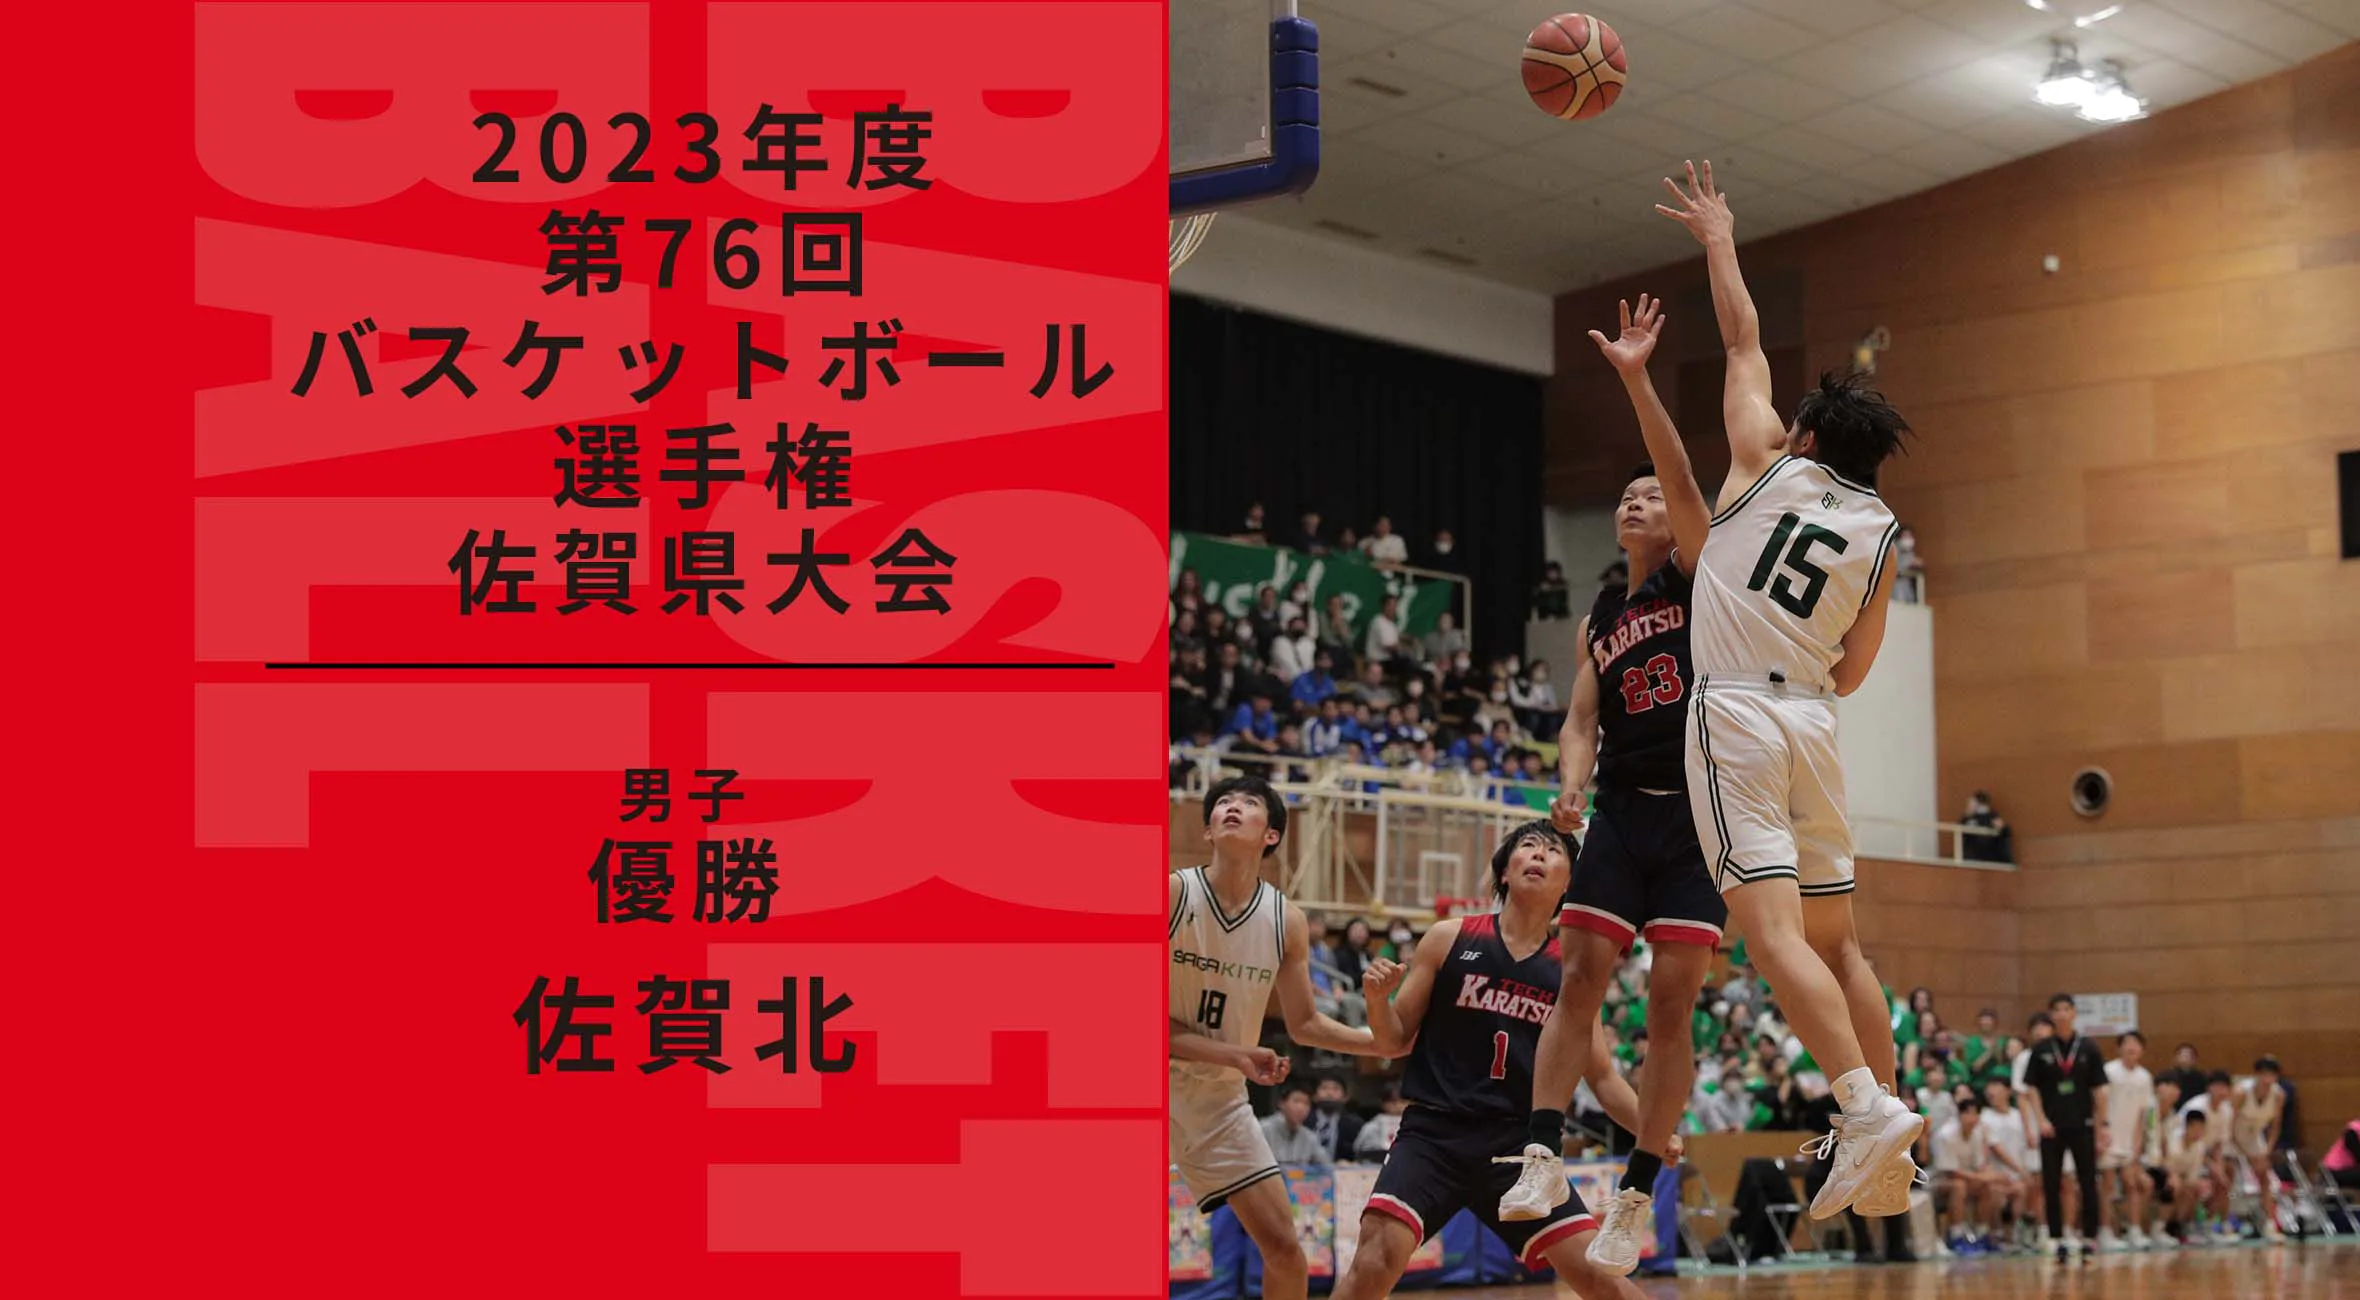 【2023 佐賀 バスケットボール 選手権 男子 大会結果】佐賀北が3連覇を果たし、ウィンターカップへの切符を手にした。